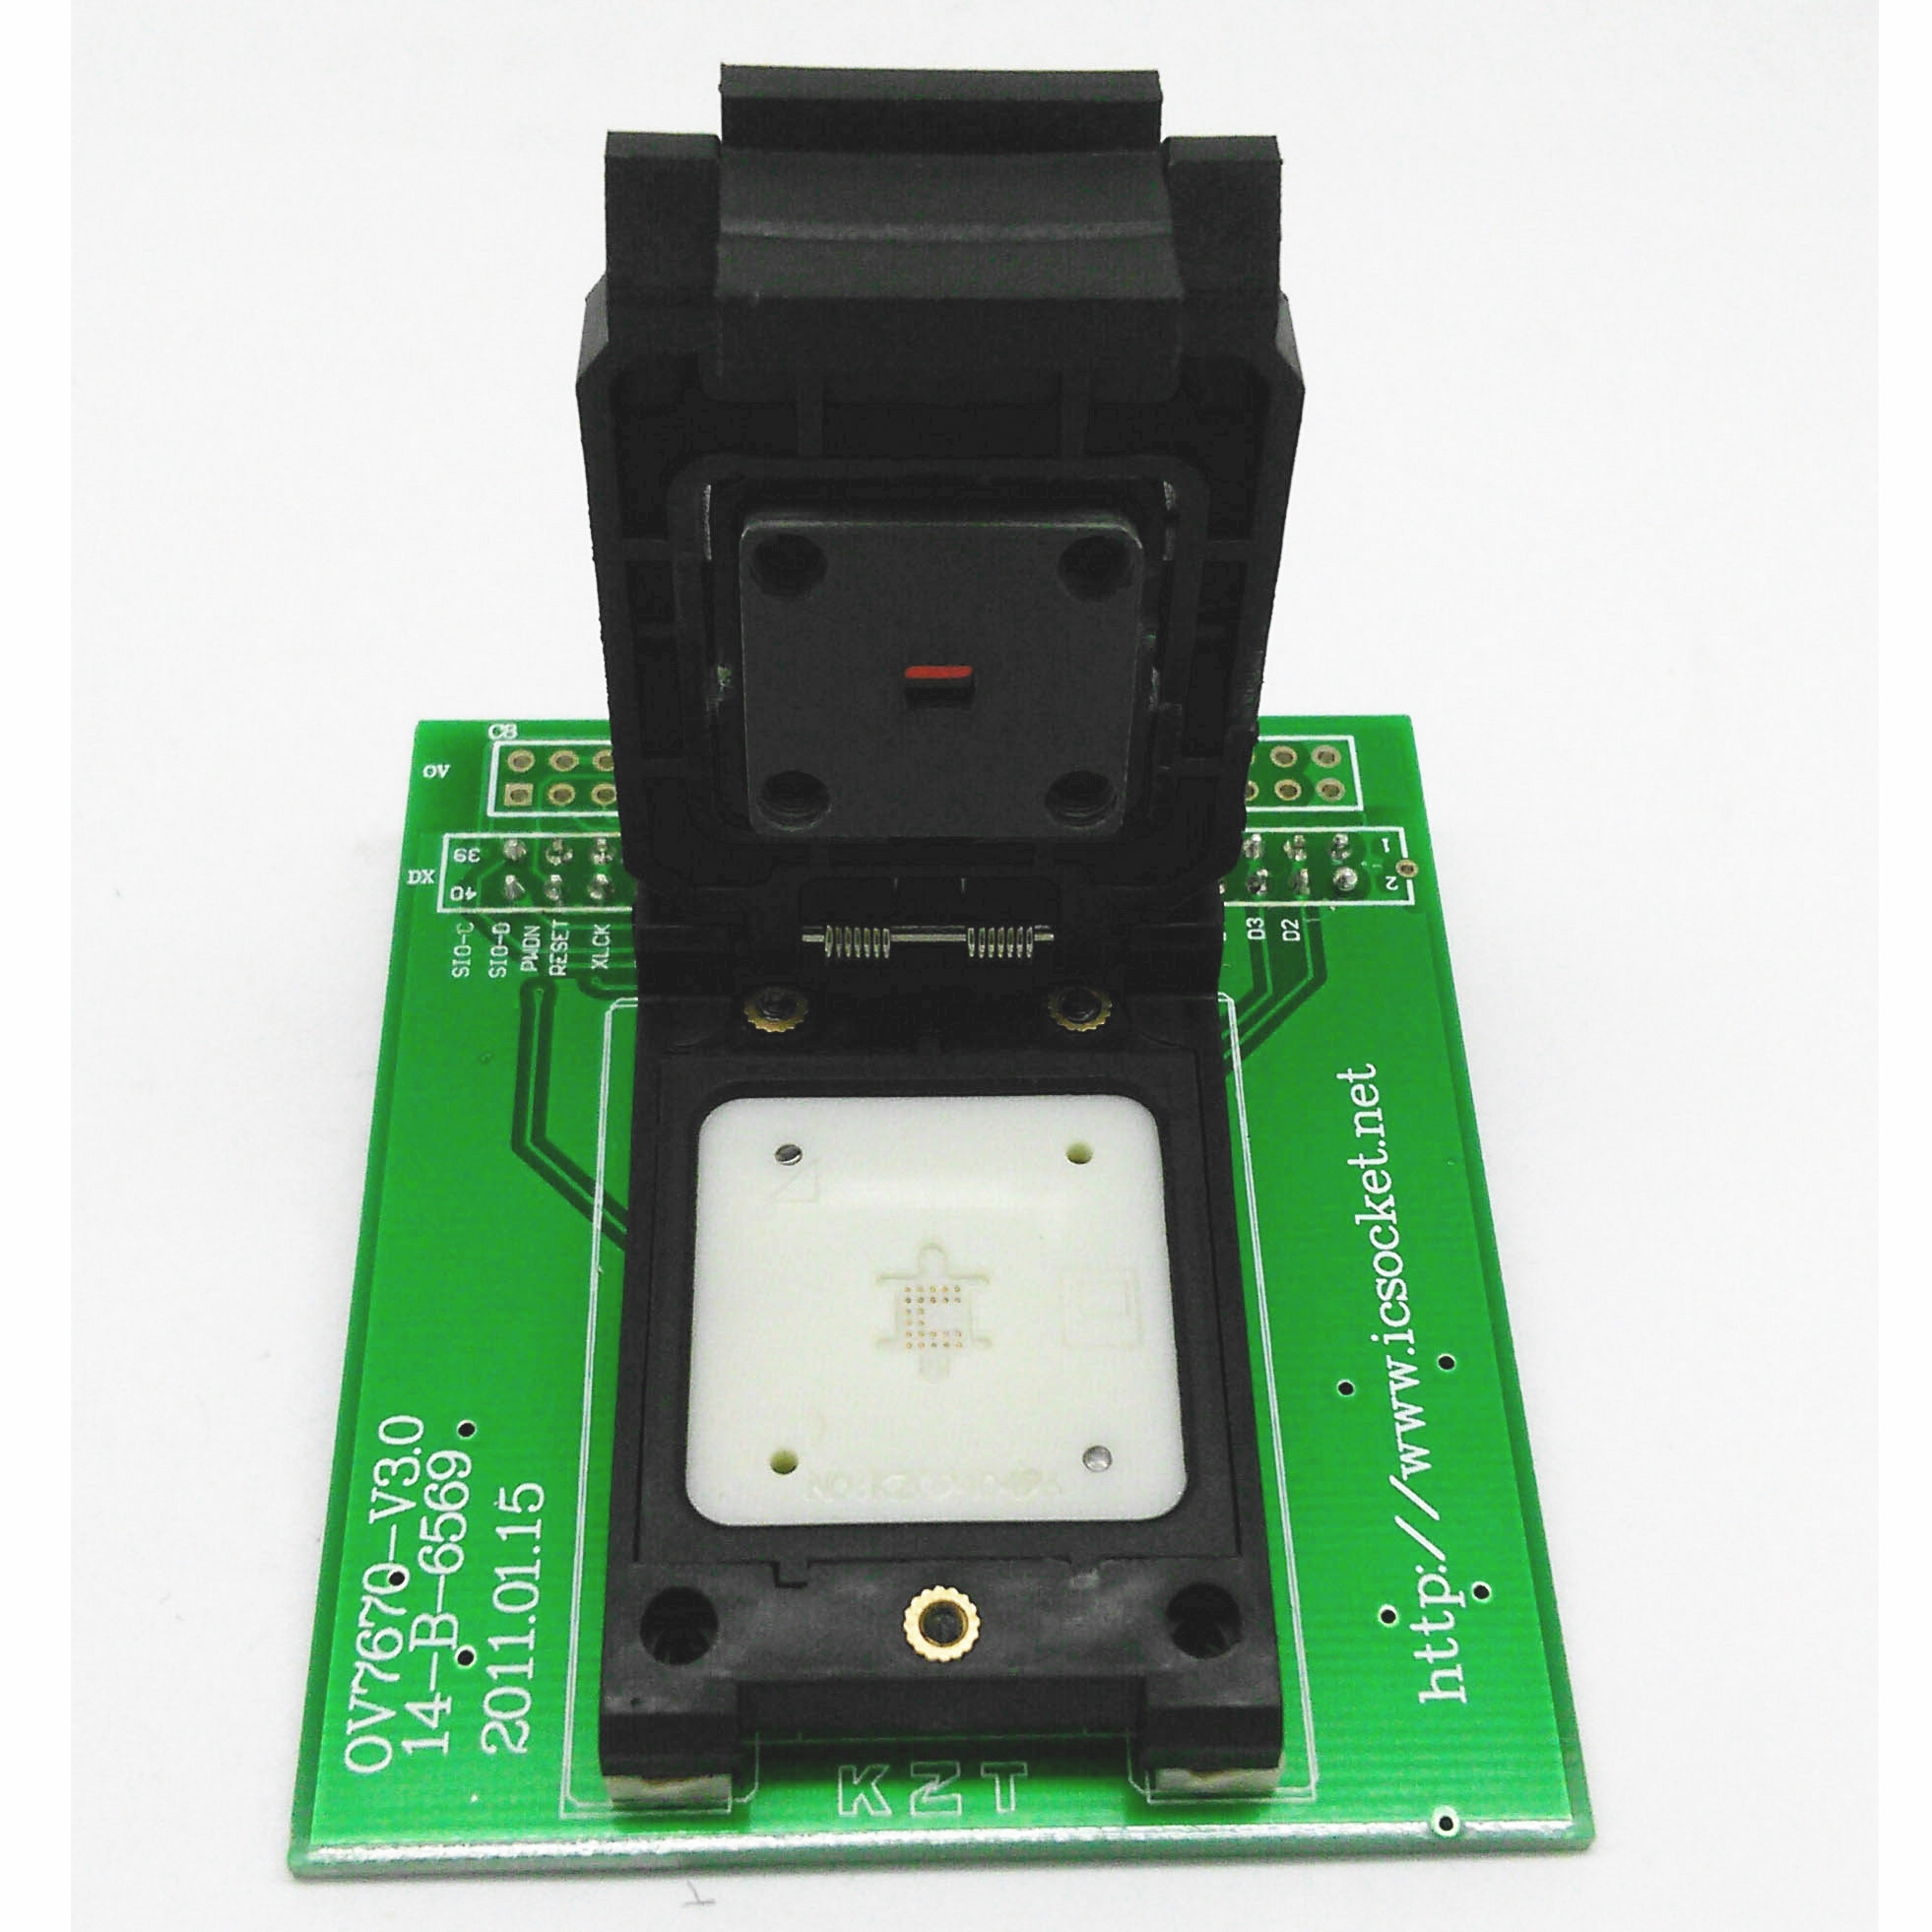 度信接口 OV7670-P 攝像頭芯片翻蓋探針測試座